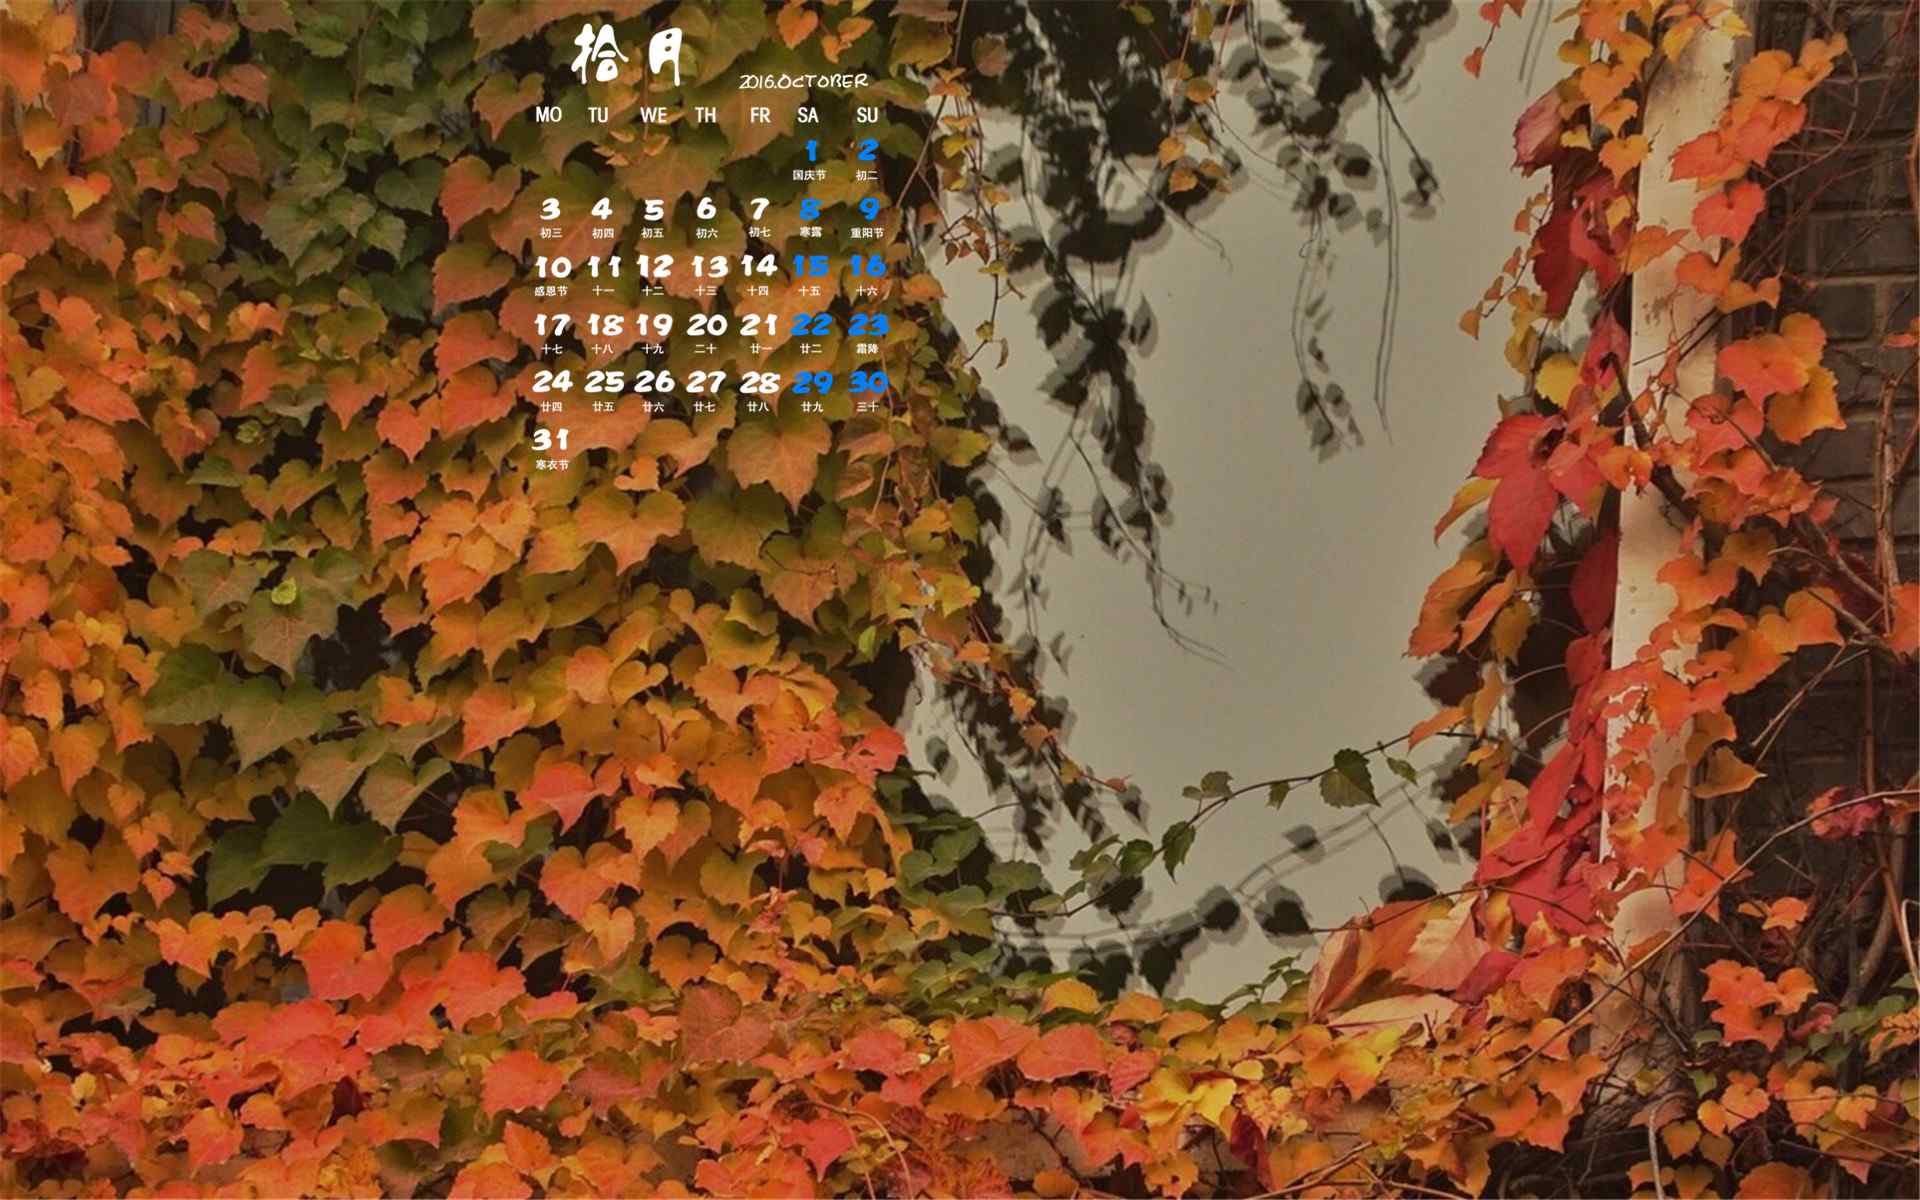 2016年10月日历墙上的秋叶摄影精选壁纸图片下载